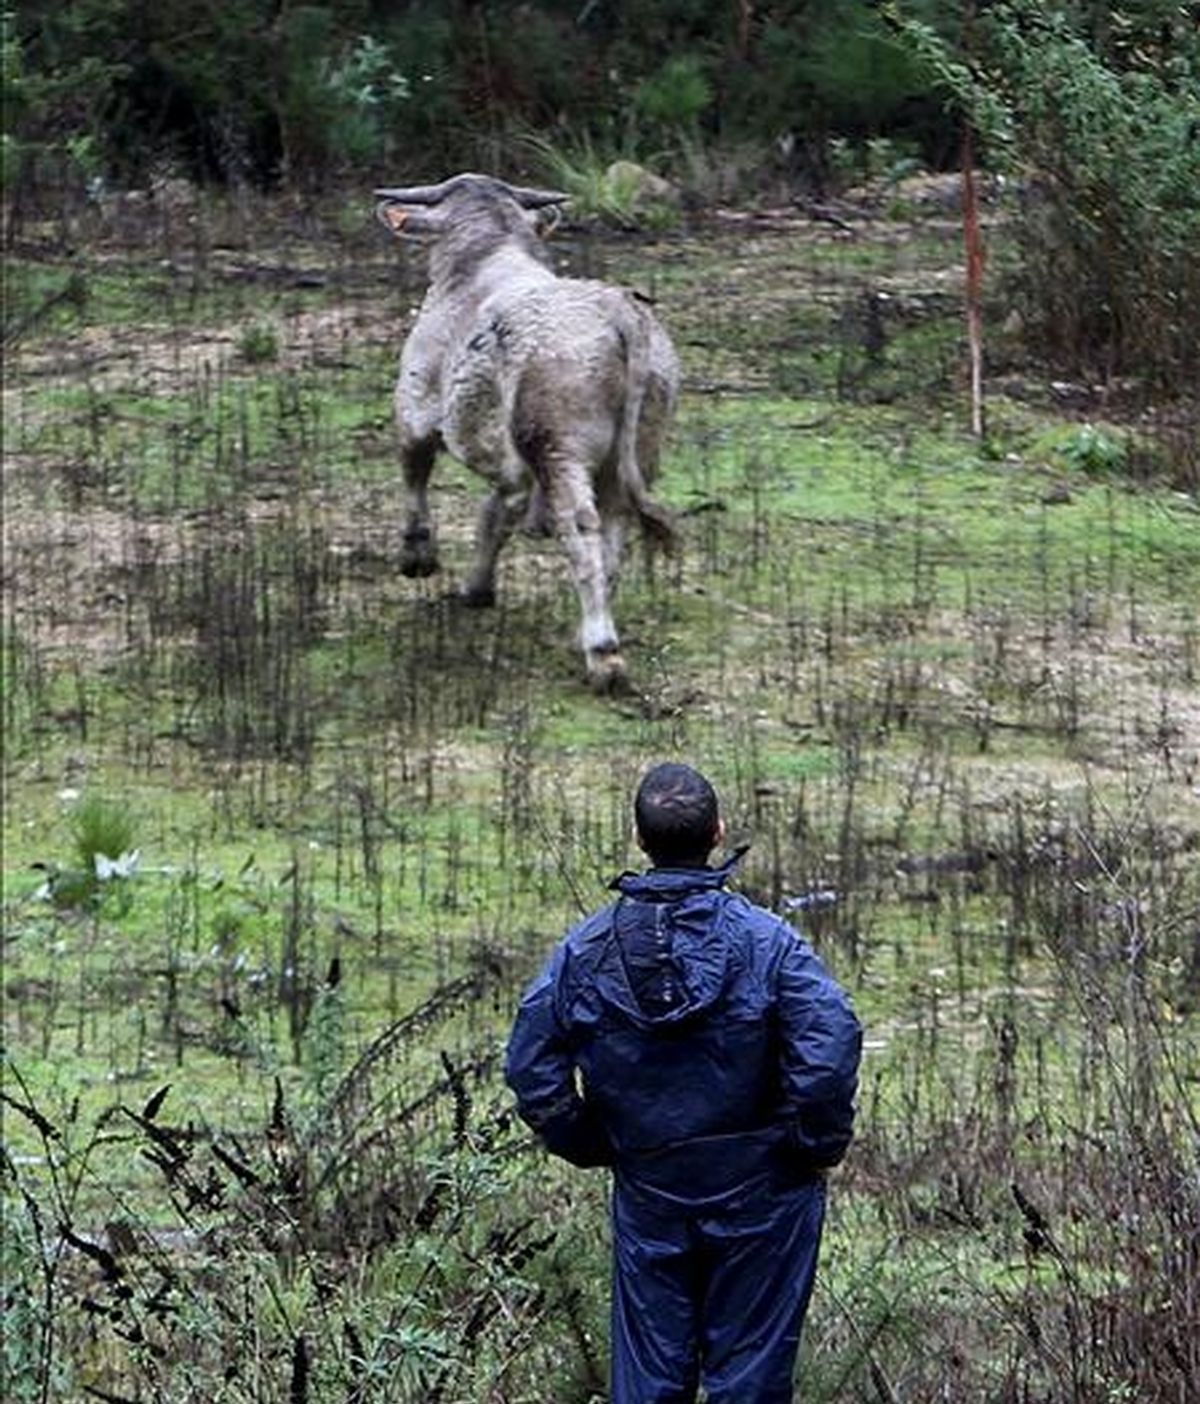 Un operario municipal observa el toro de más de 400 kilogramos de peso después de que ayer se escapase de un matadero de O Porriño (Pontevedra). EFE/Archivo